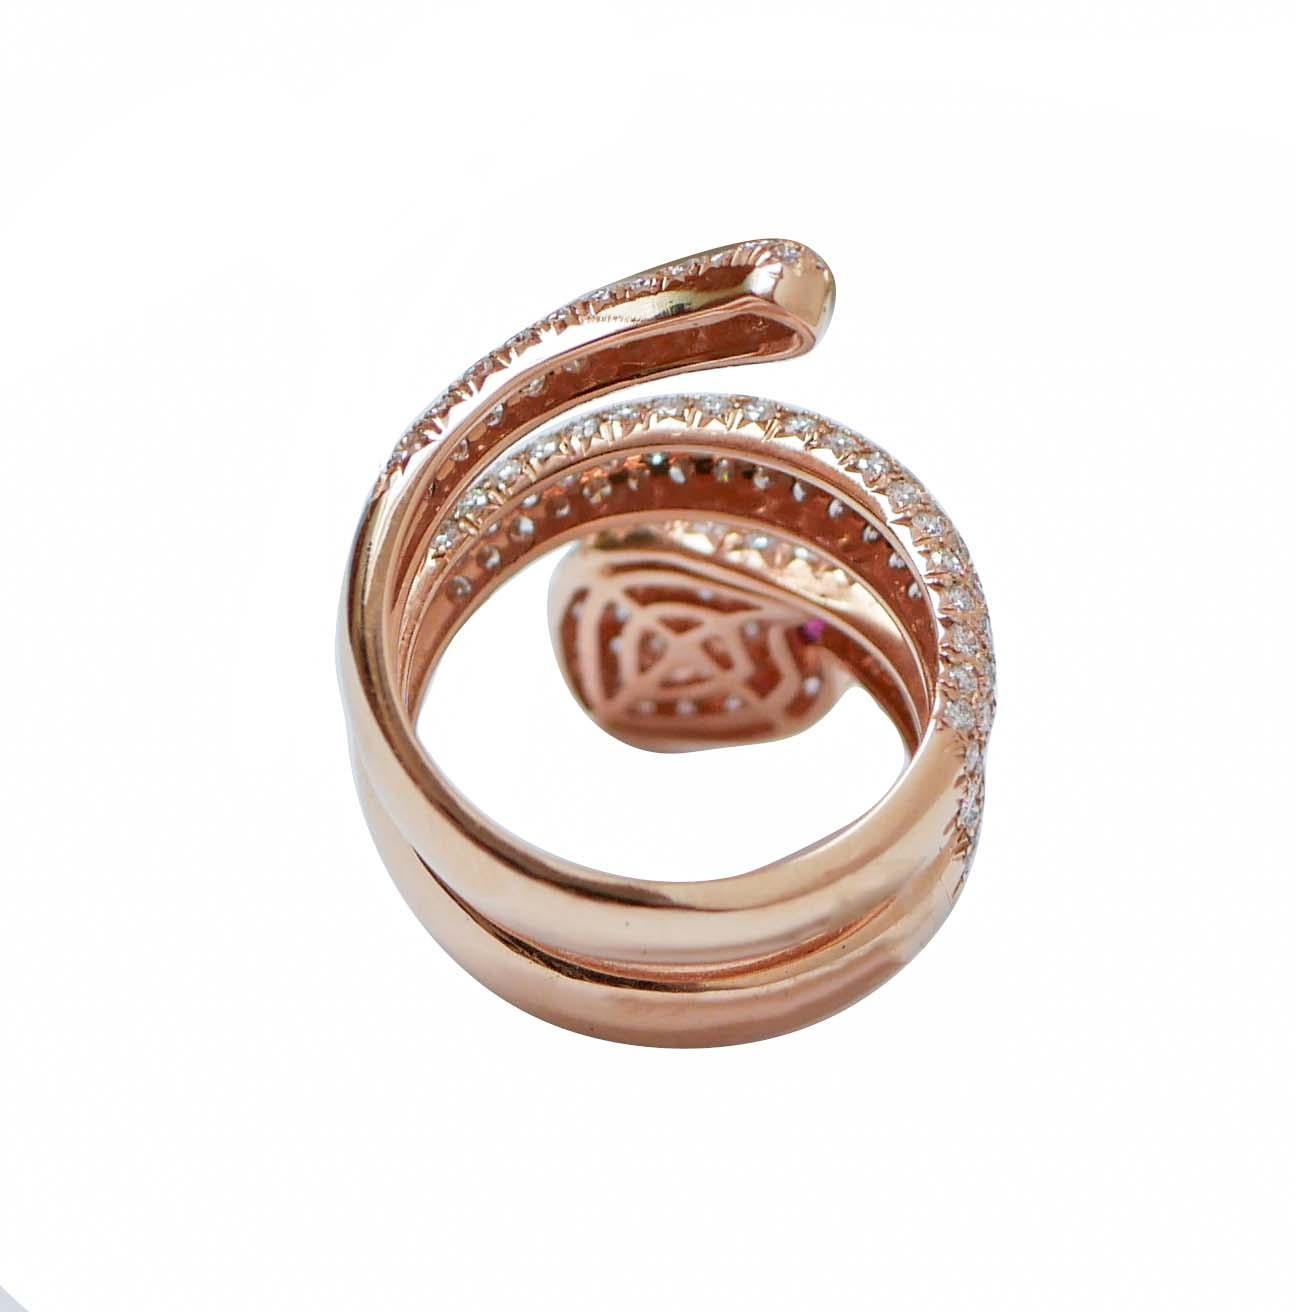 Modern Rubies, Diamonds, 18 Karat Rose Gold Snake Ring.